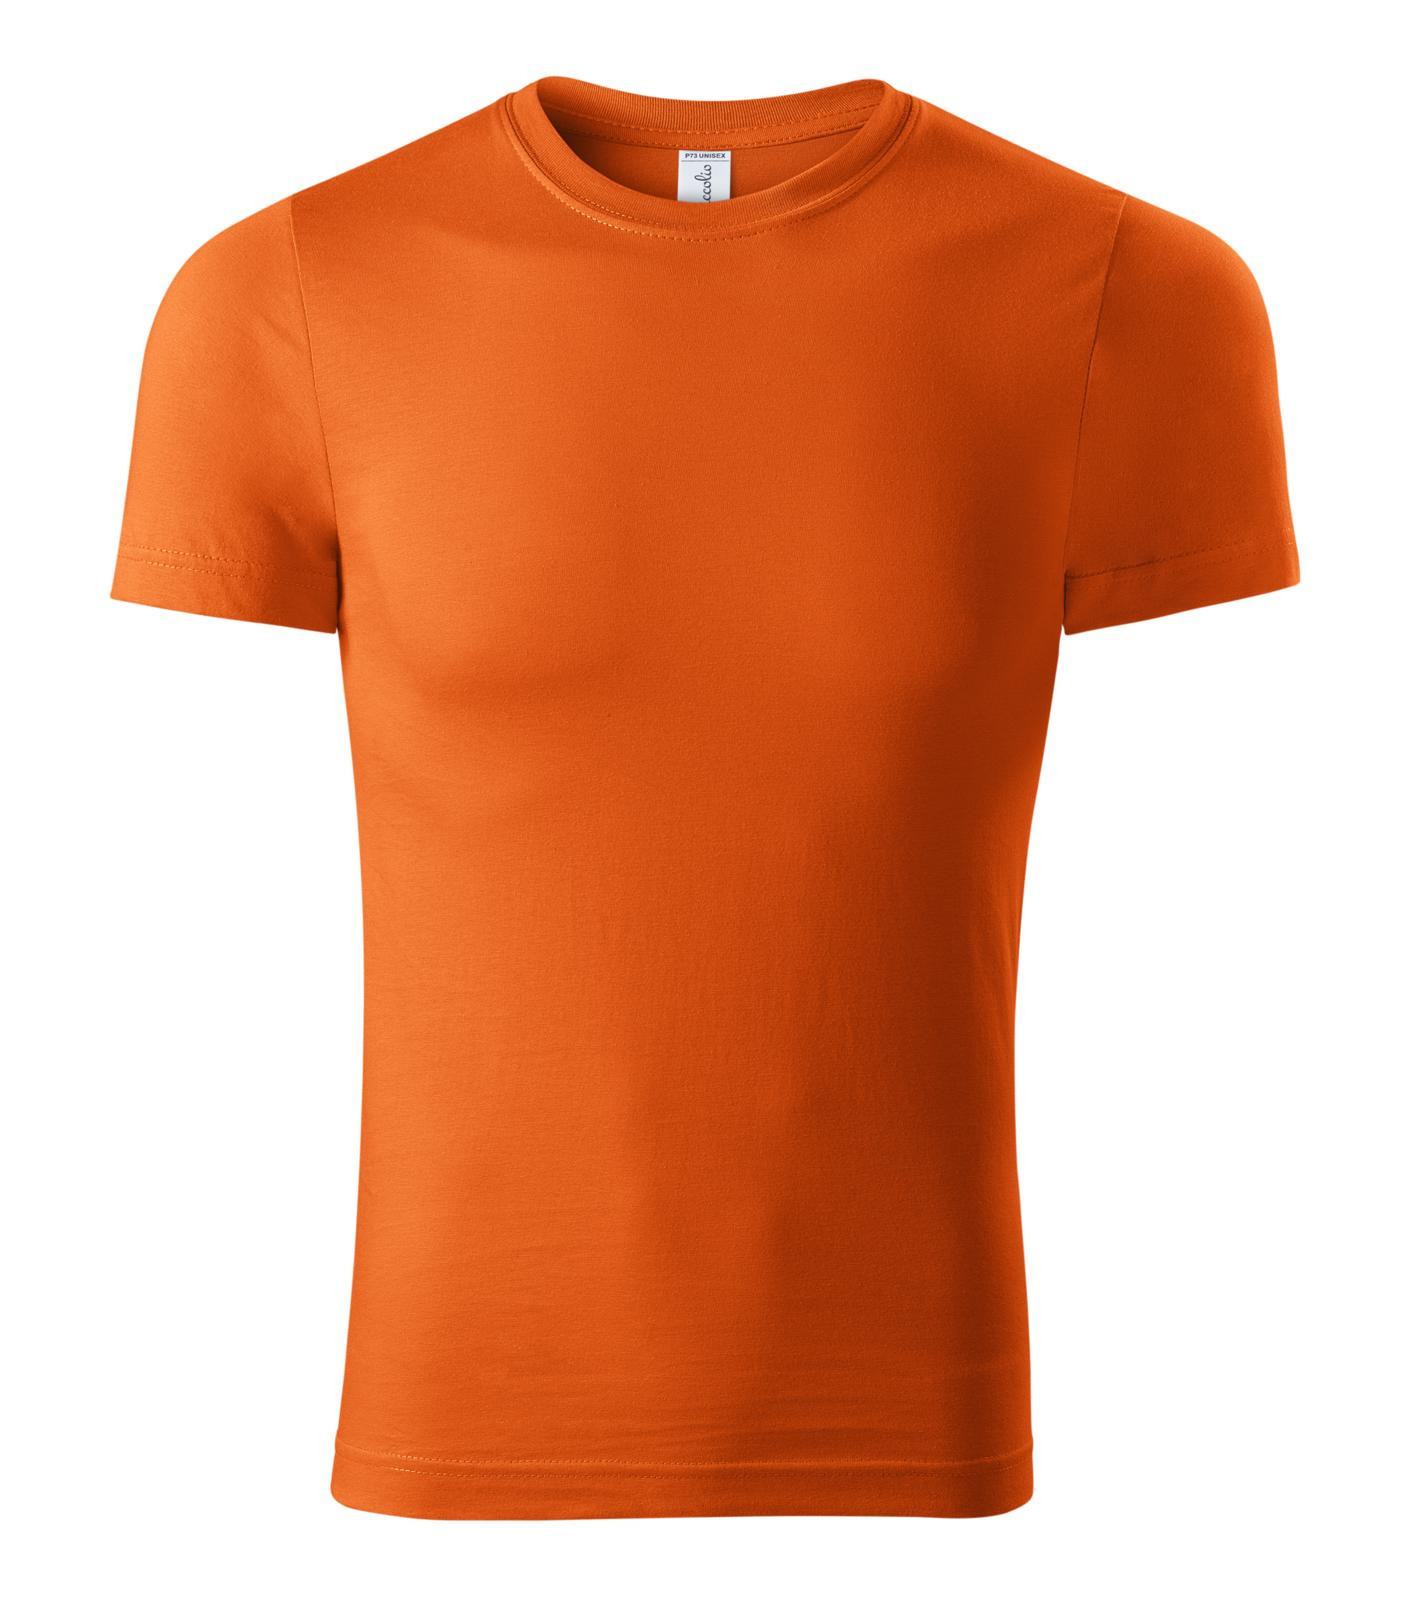 Unisex tričko Piccolio Paint P73 - veľkosť: M, farba: oranžová